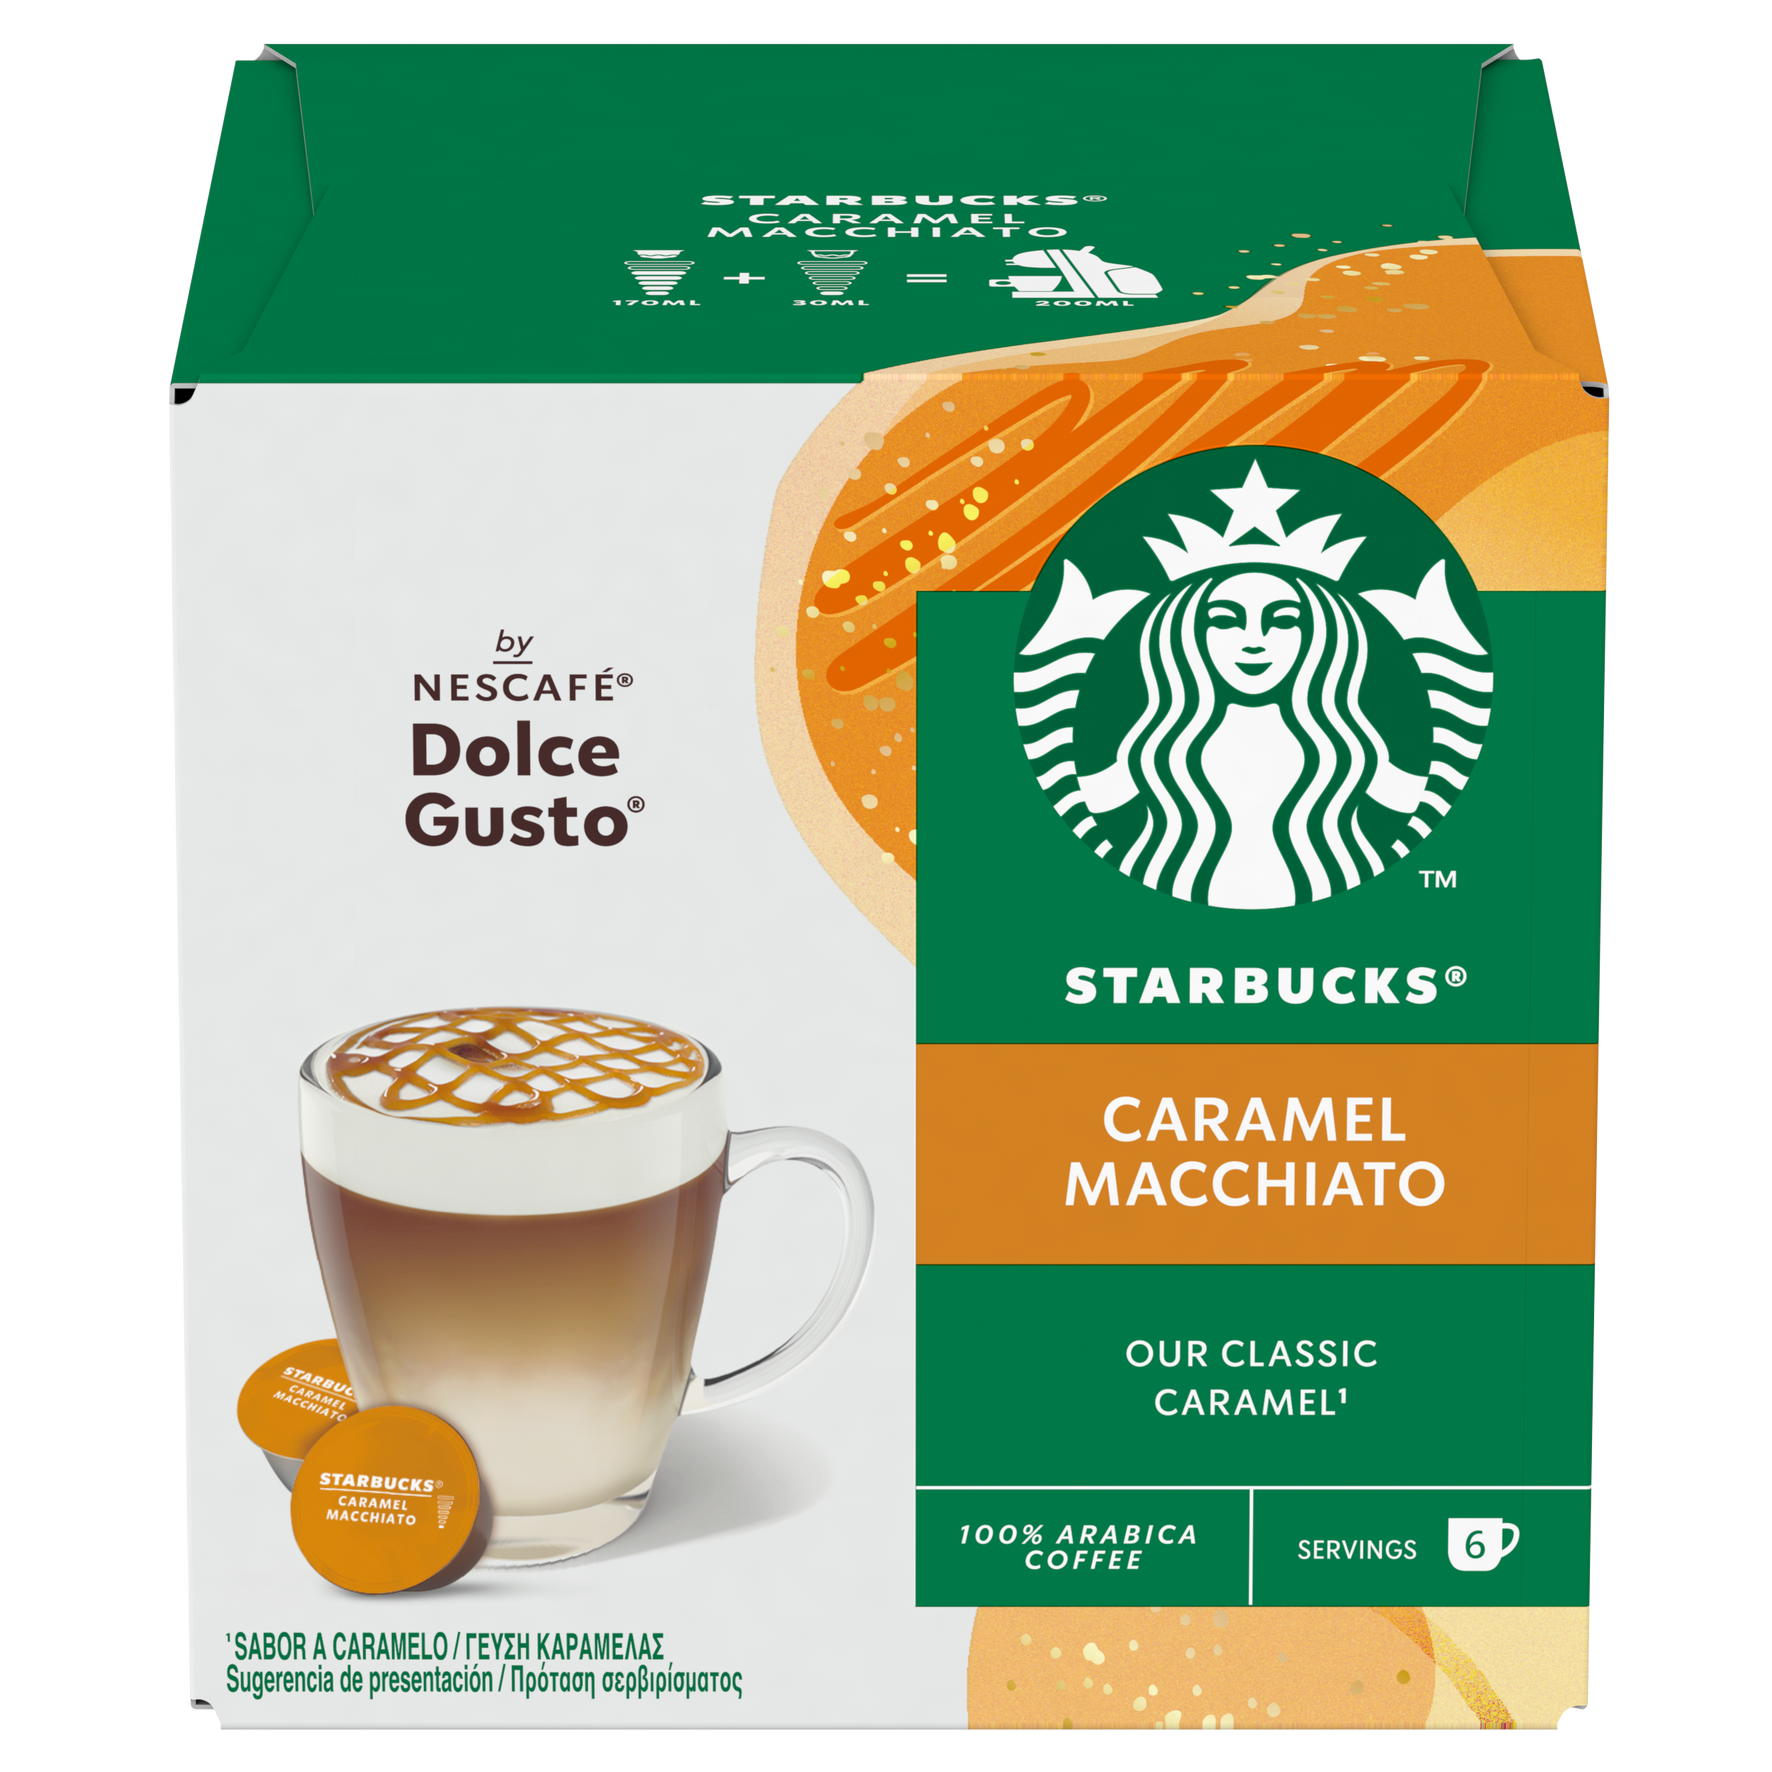 Coffee capsules NESCAFÉ® Dolce Gusto® Cappuccino, 3 x 8+8 pcs. - Coffee  Friend